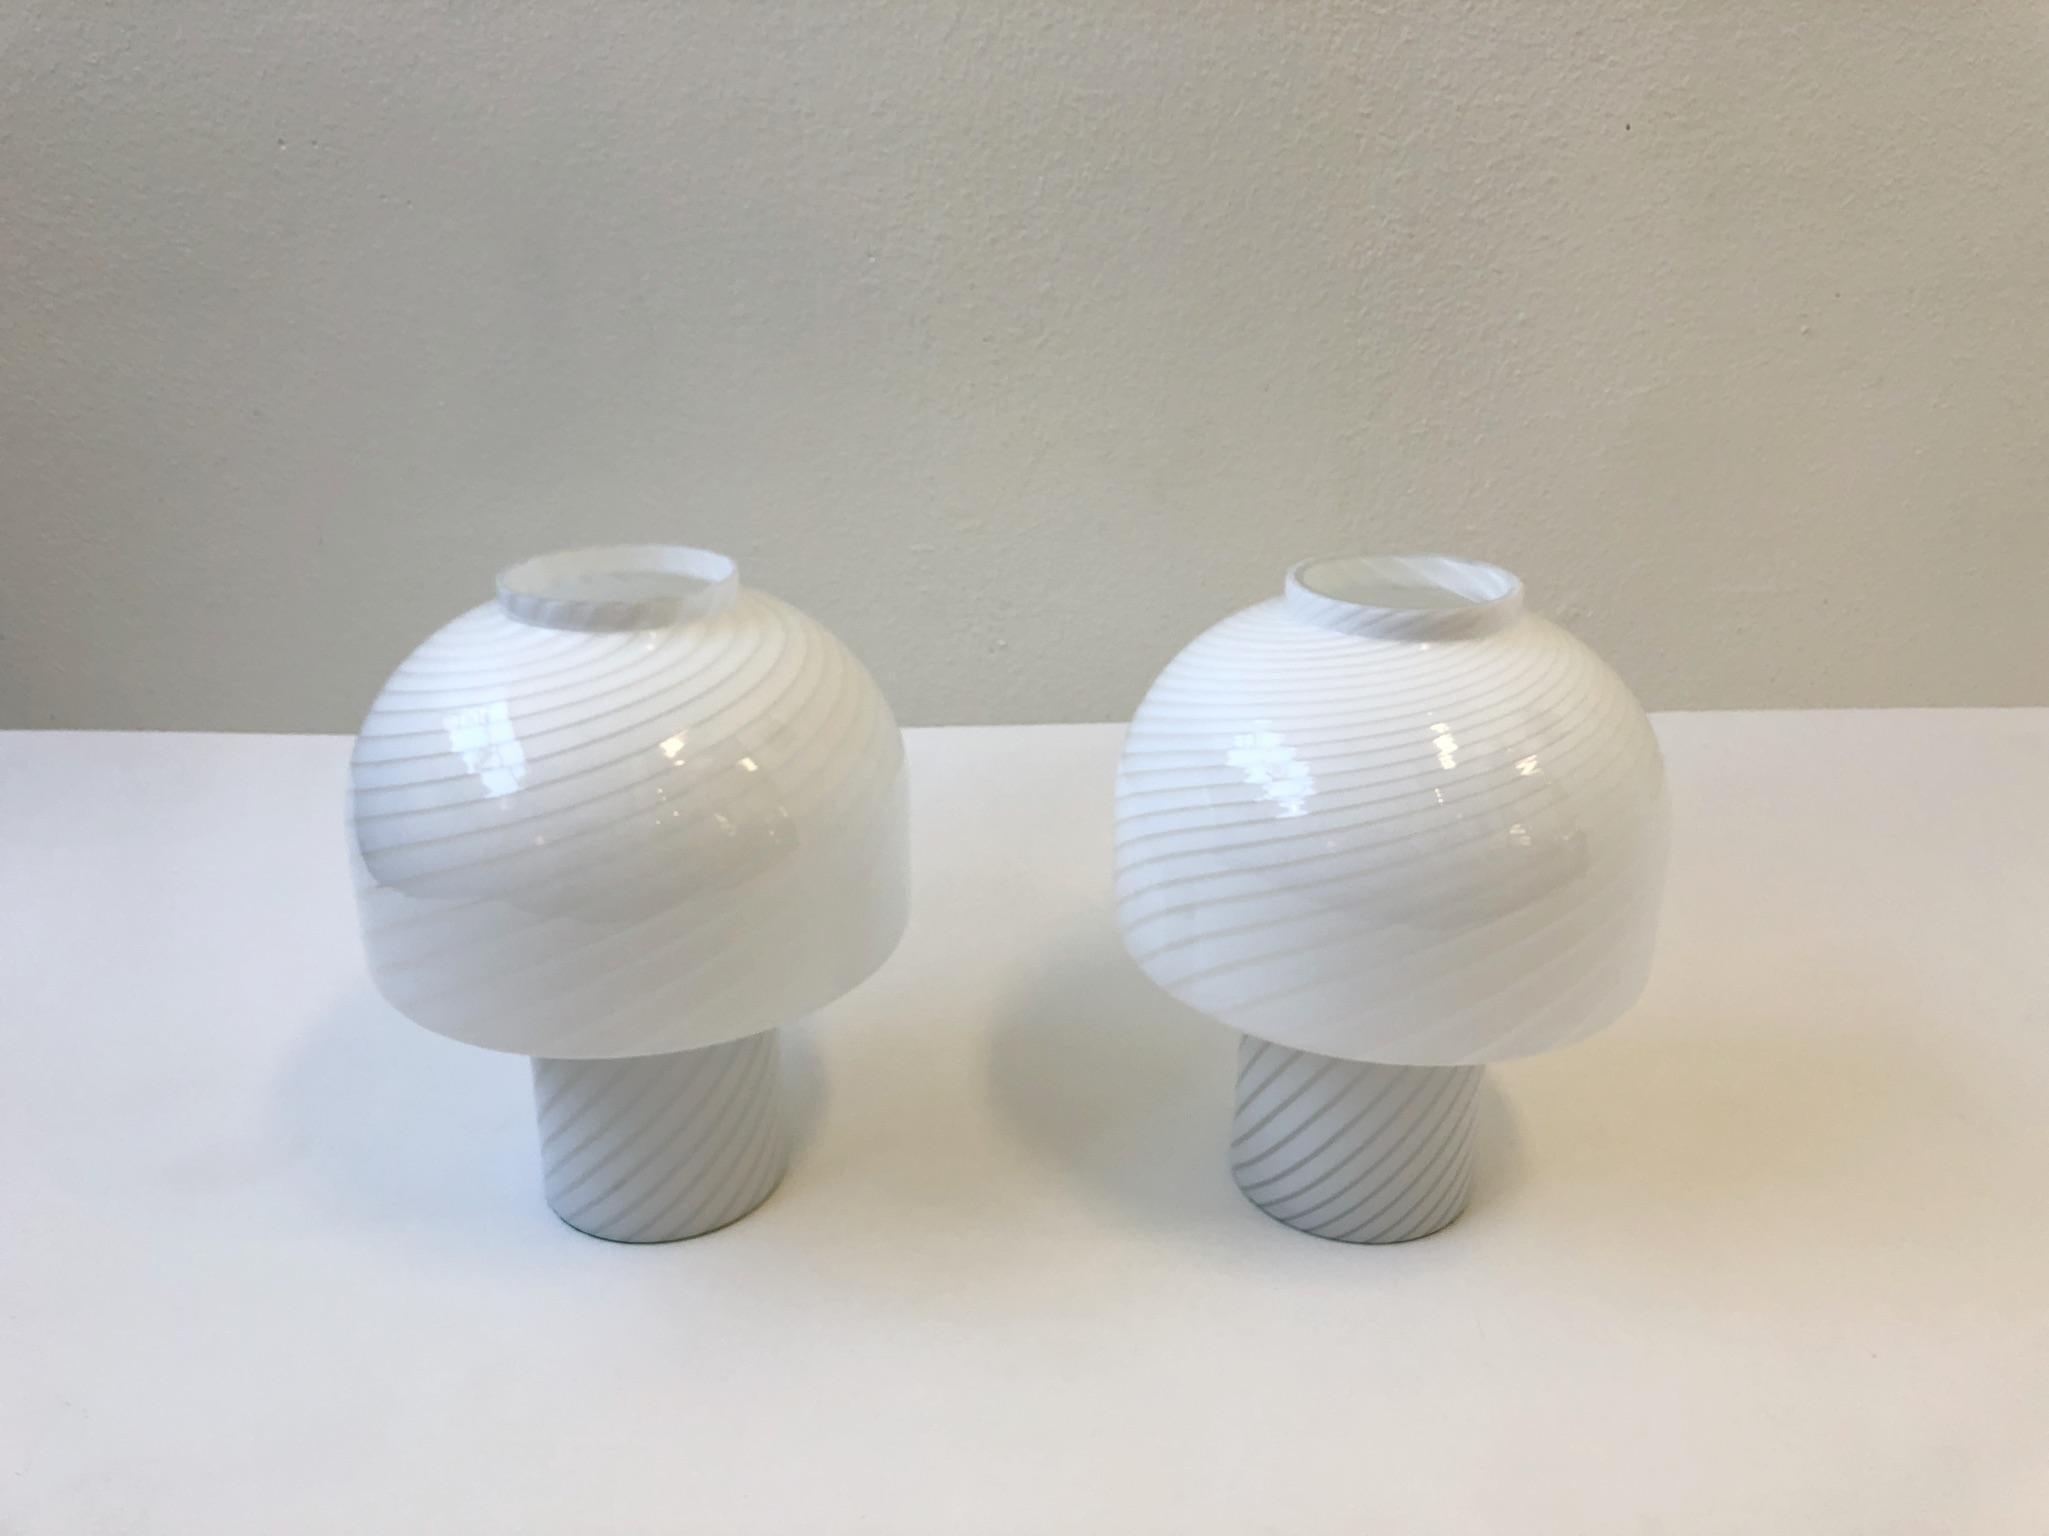 Pair of Italian Murano Glass Mushroom Table Lamps by Vetri 1